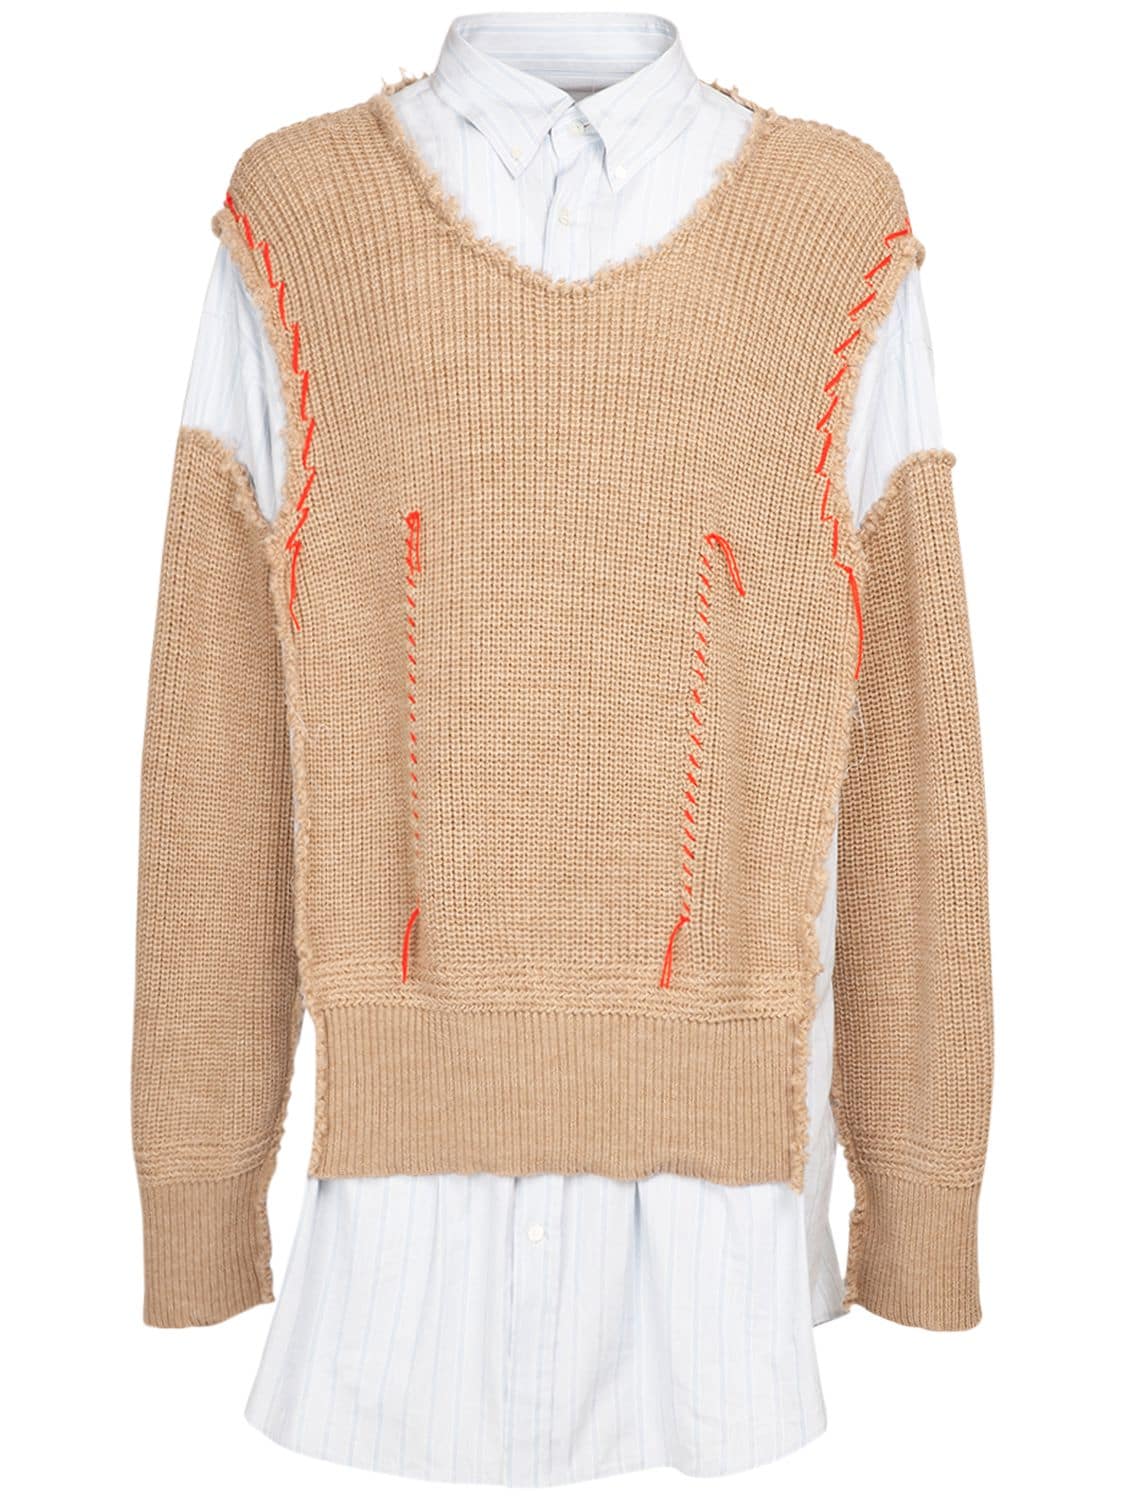 MAISON MARGIELA Striped Cotton Shirt W/knit Wool Sweater